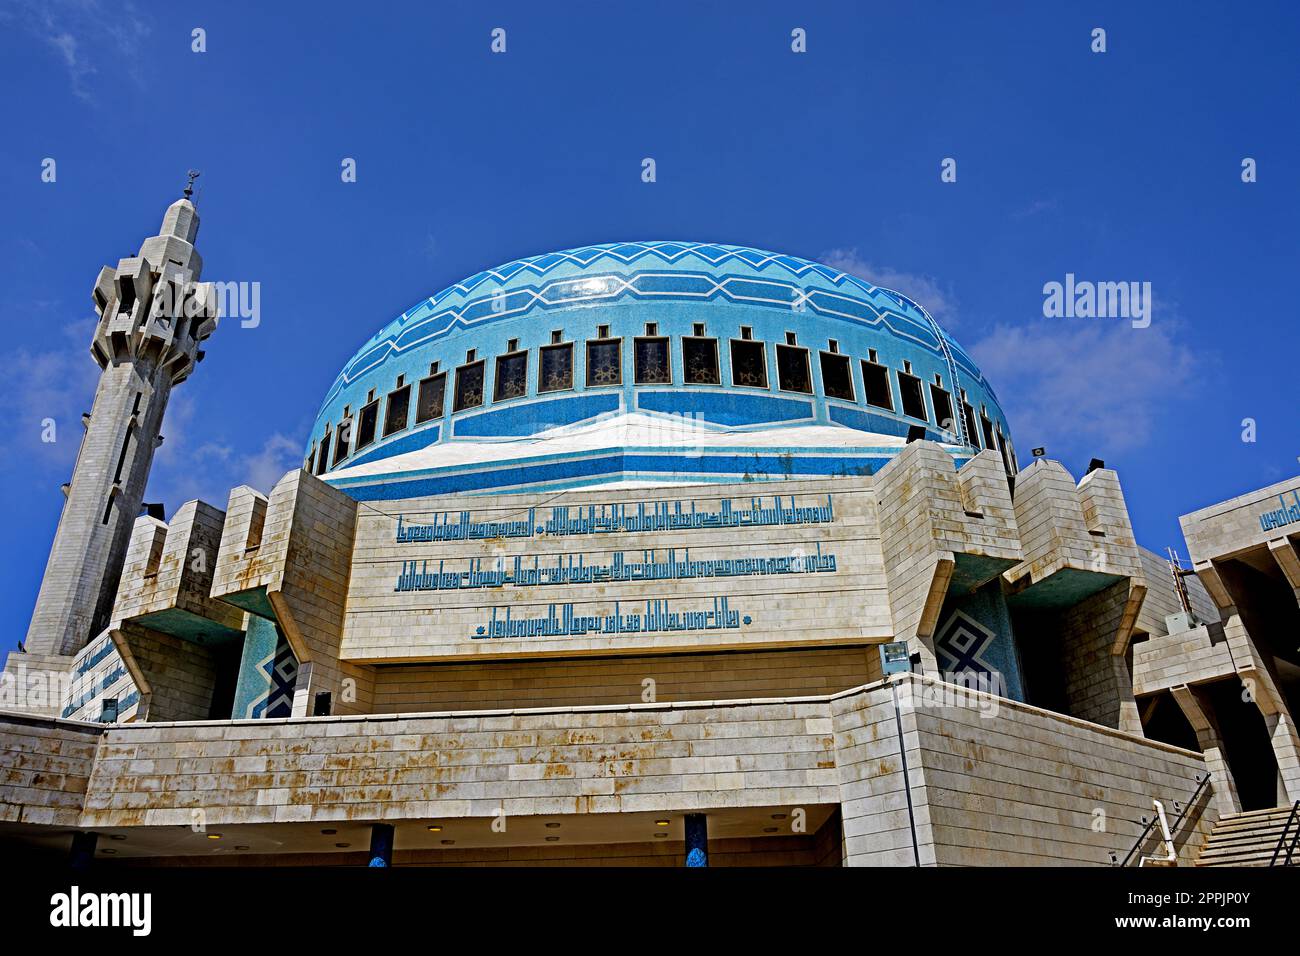 Mosquée du roi Abdallah I à Amman, en Jordanie. Également connue sous le nom de mosquée bleue a été construite entre 1982 et 1989 à Amman, Jordanie, الأردن, Royaume hachémite Banque D'Images